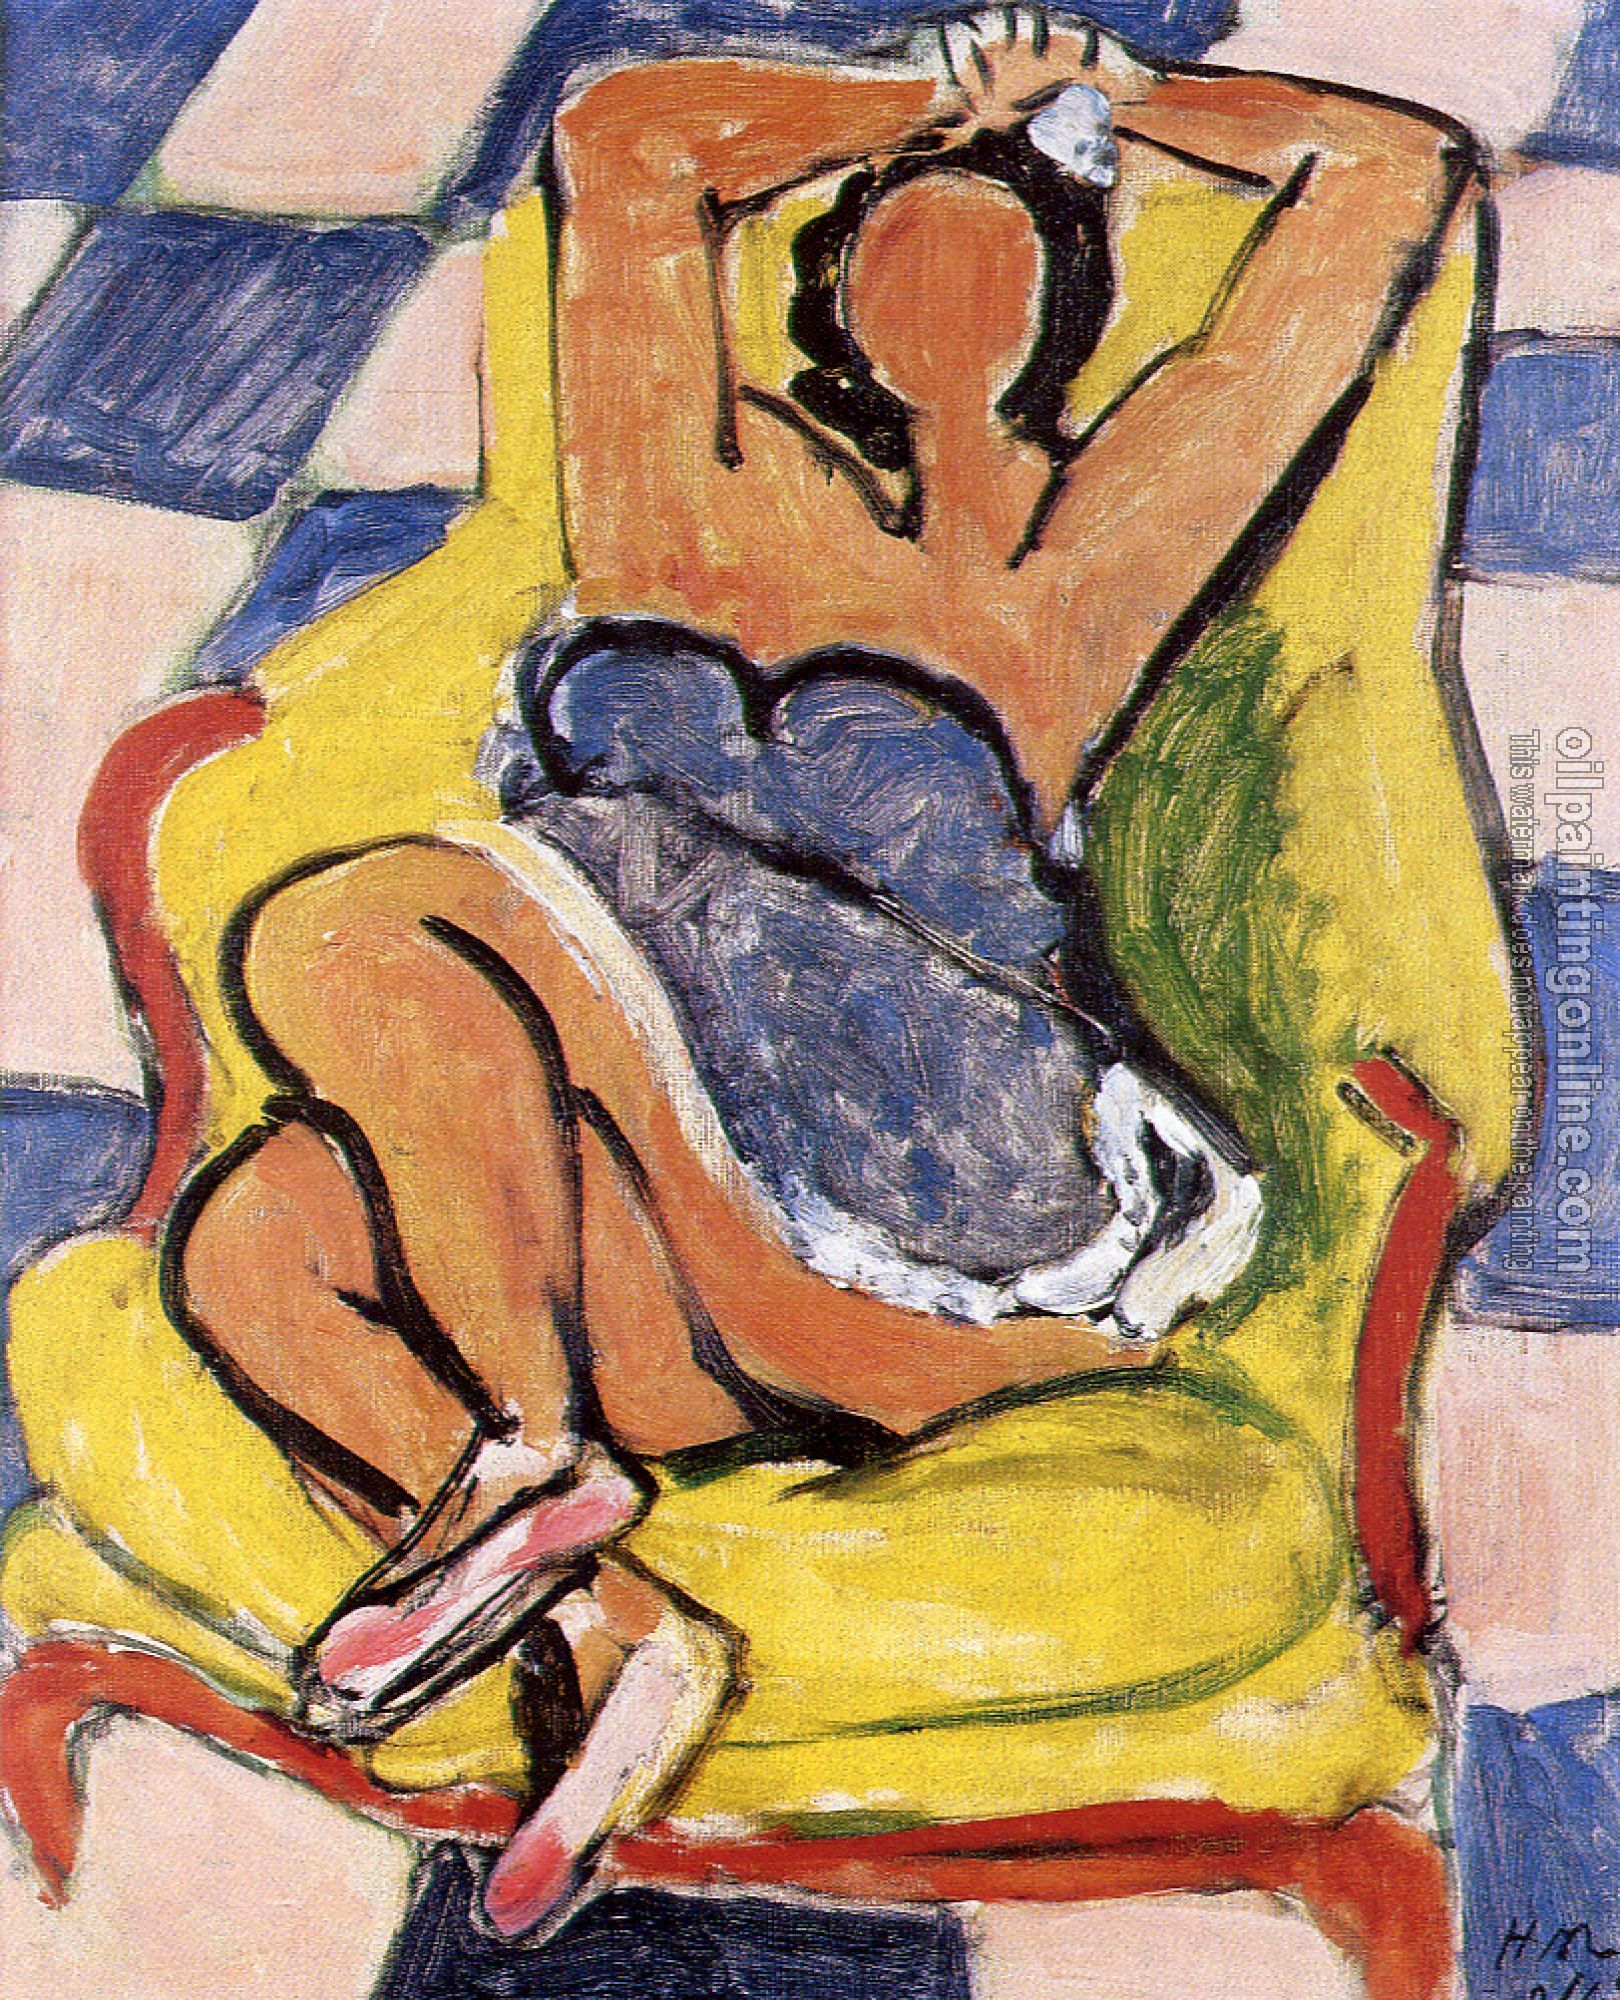 Matisse, Henri Emile Benoit - dancer in repose